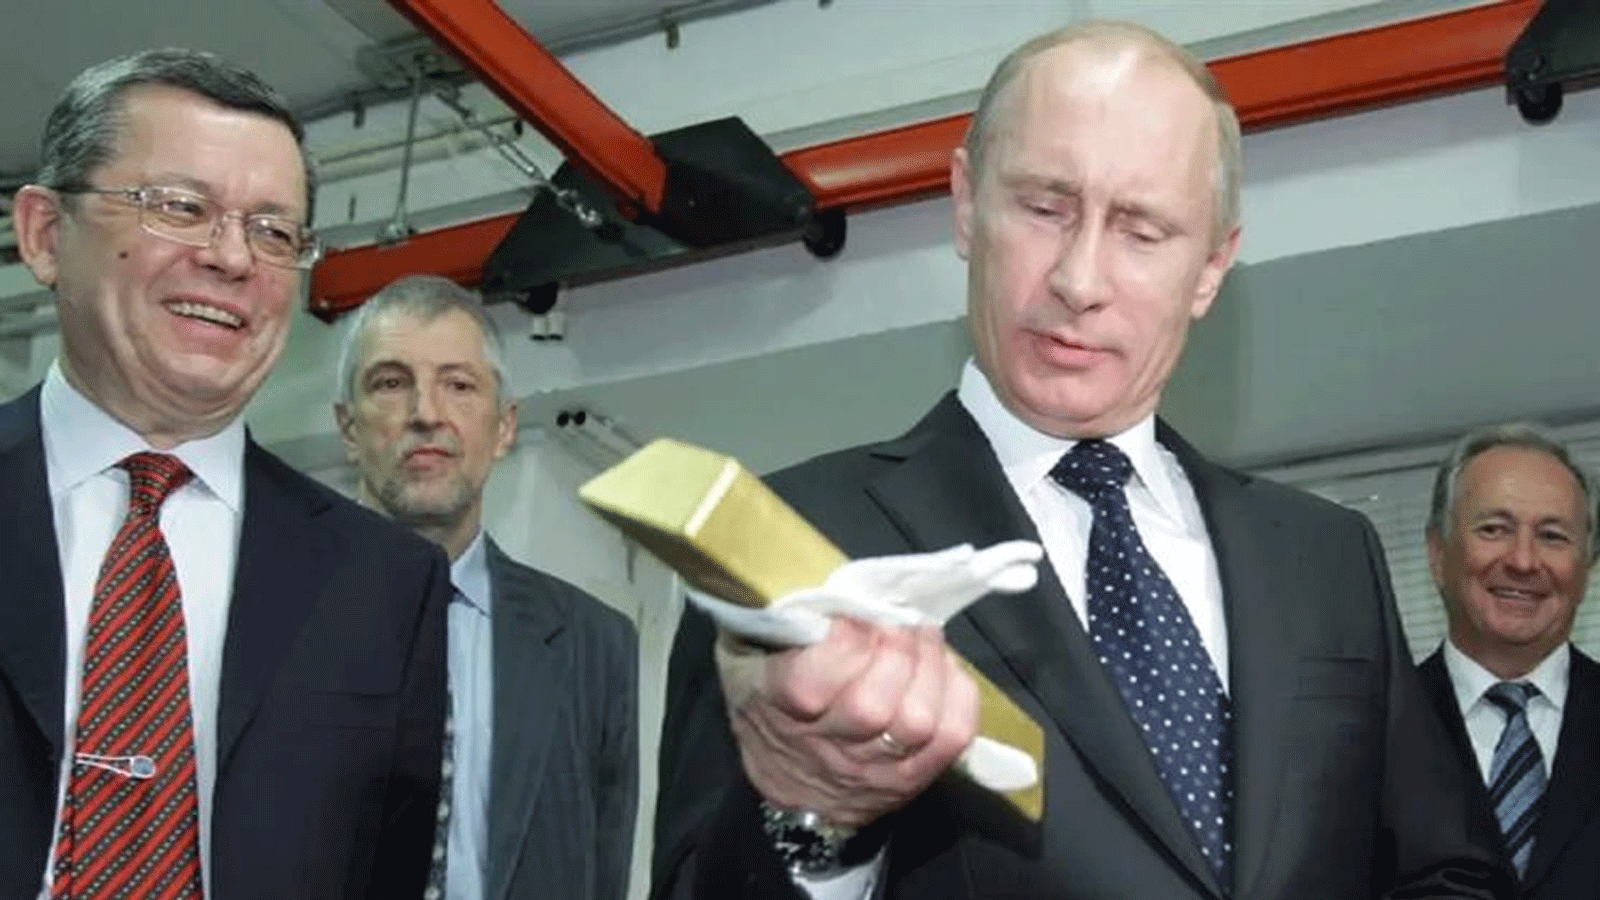 فلاديمير بوتين يحمل سبيكة ذهبية أثناء زيارته للبنك المركزي لروسيا في 24 كانون الثاني\ يناير 2011.